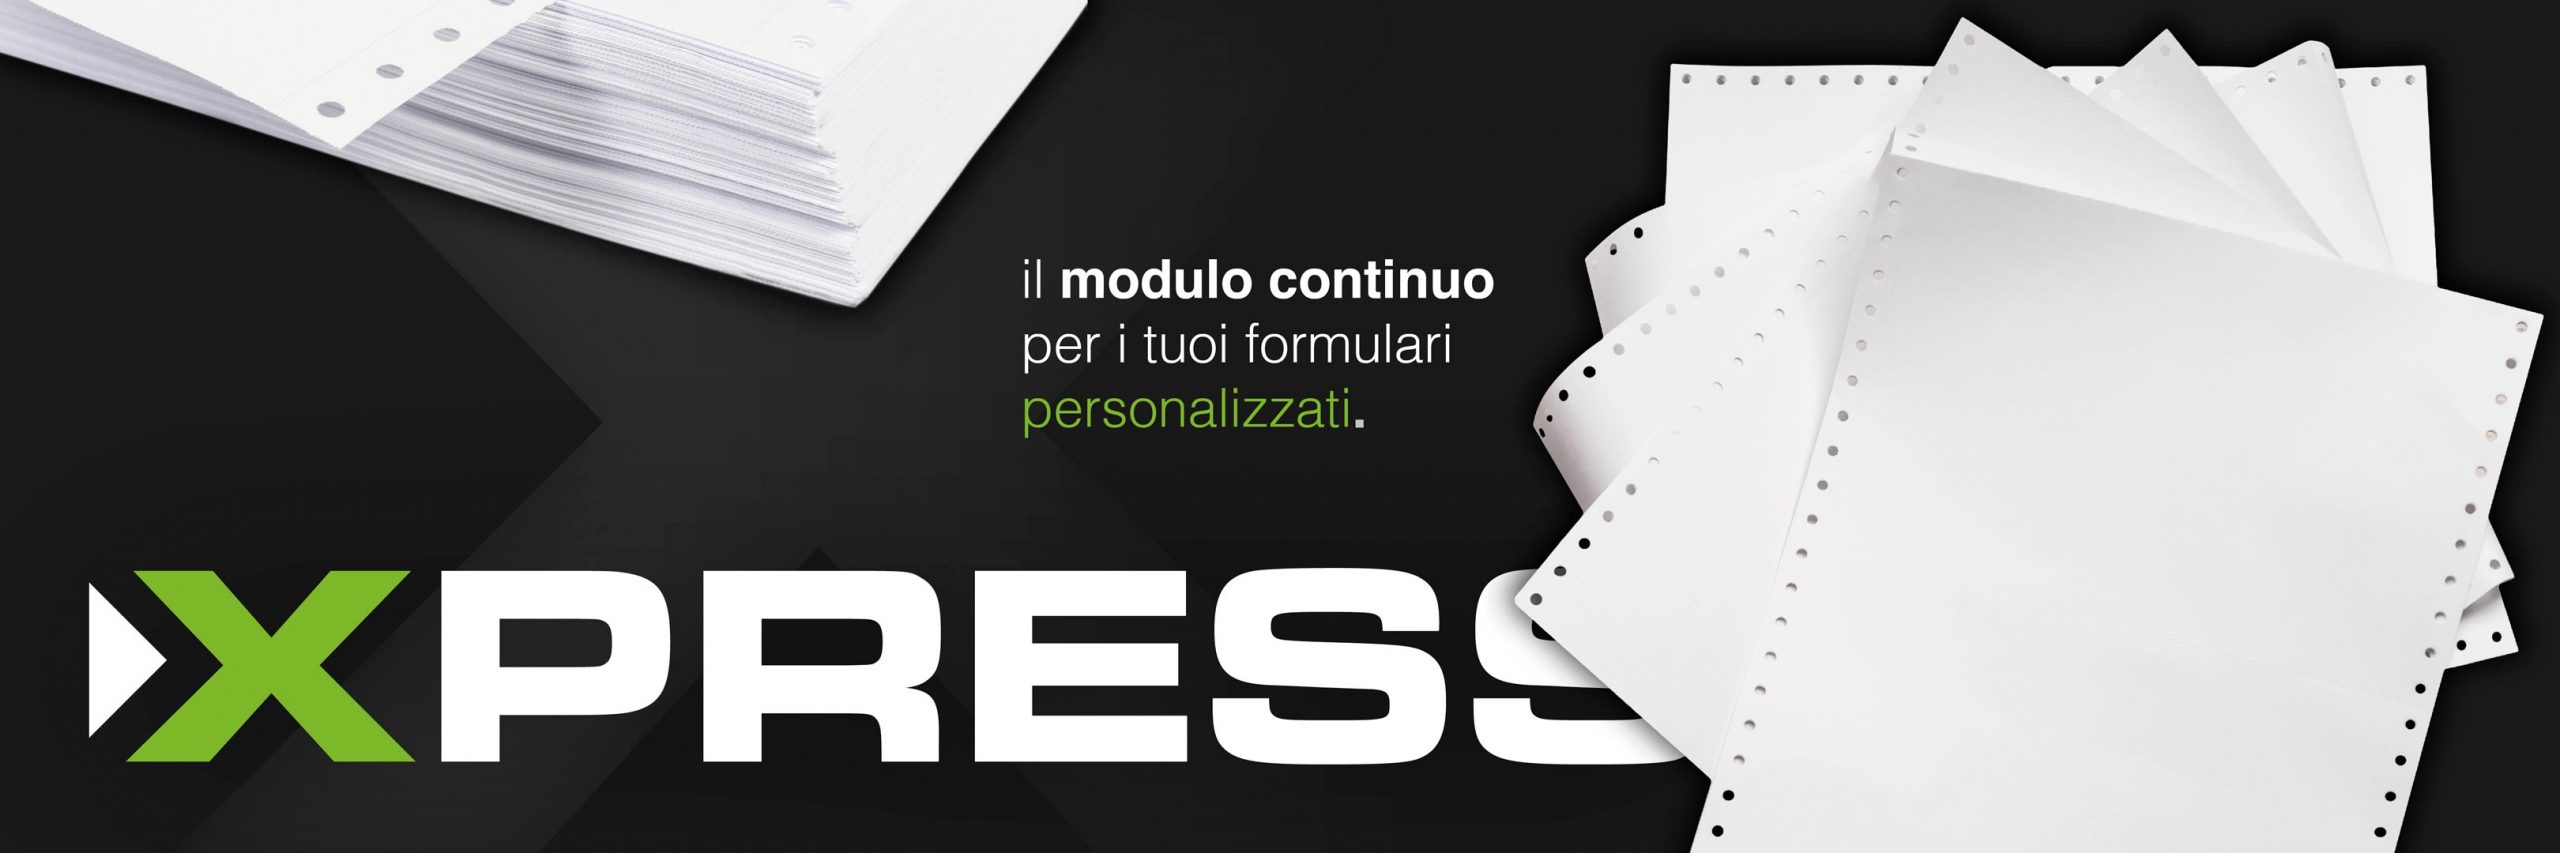 Xpress-Modulo-Continuo-3-post